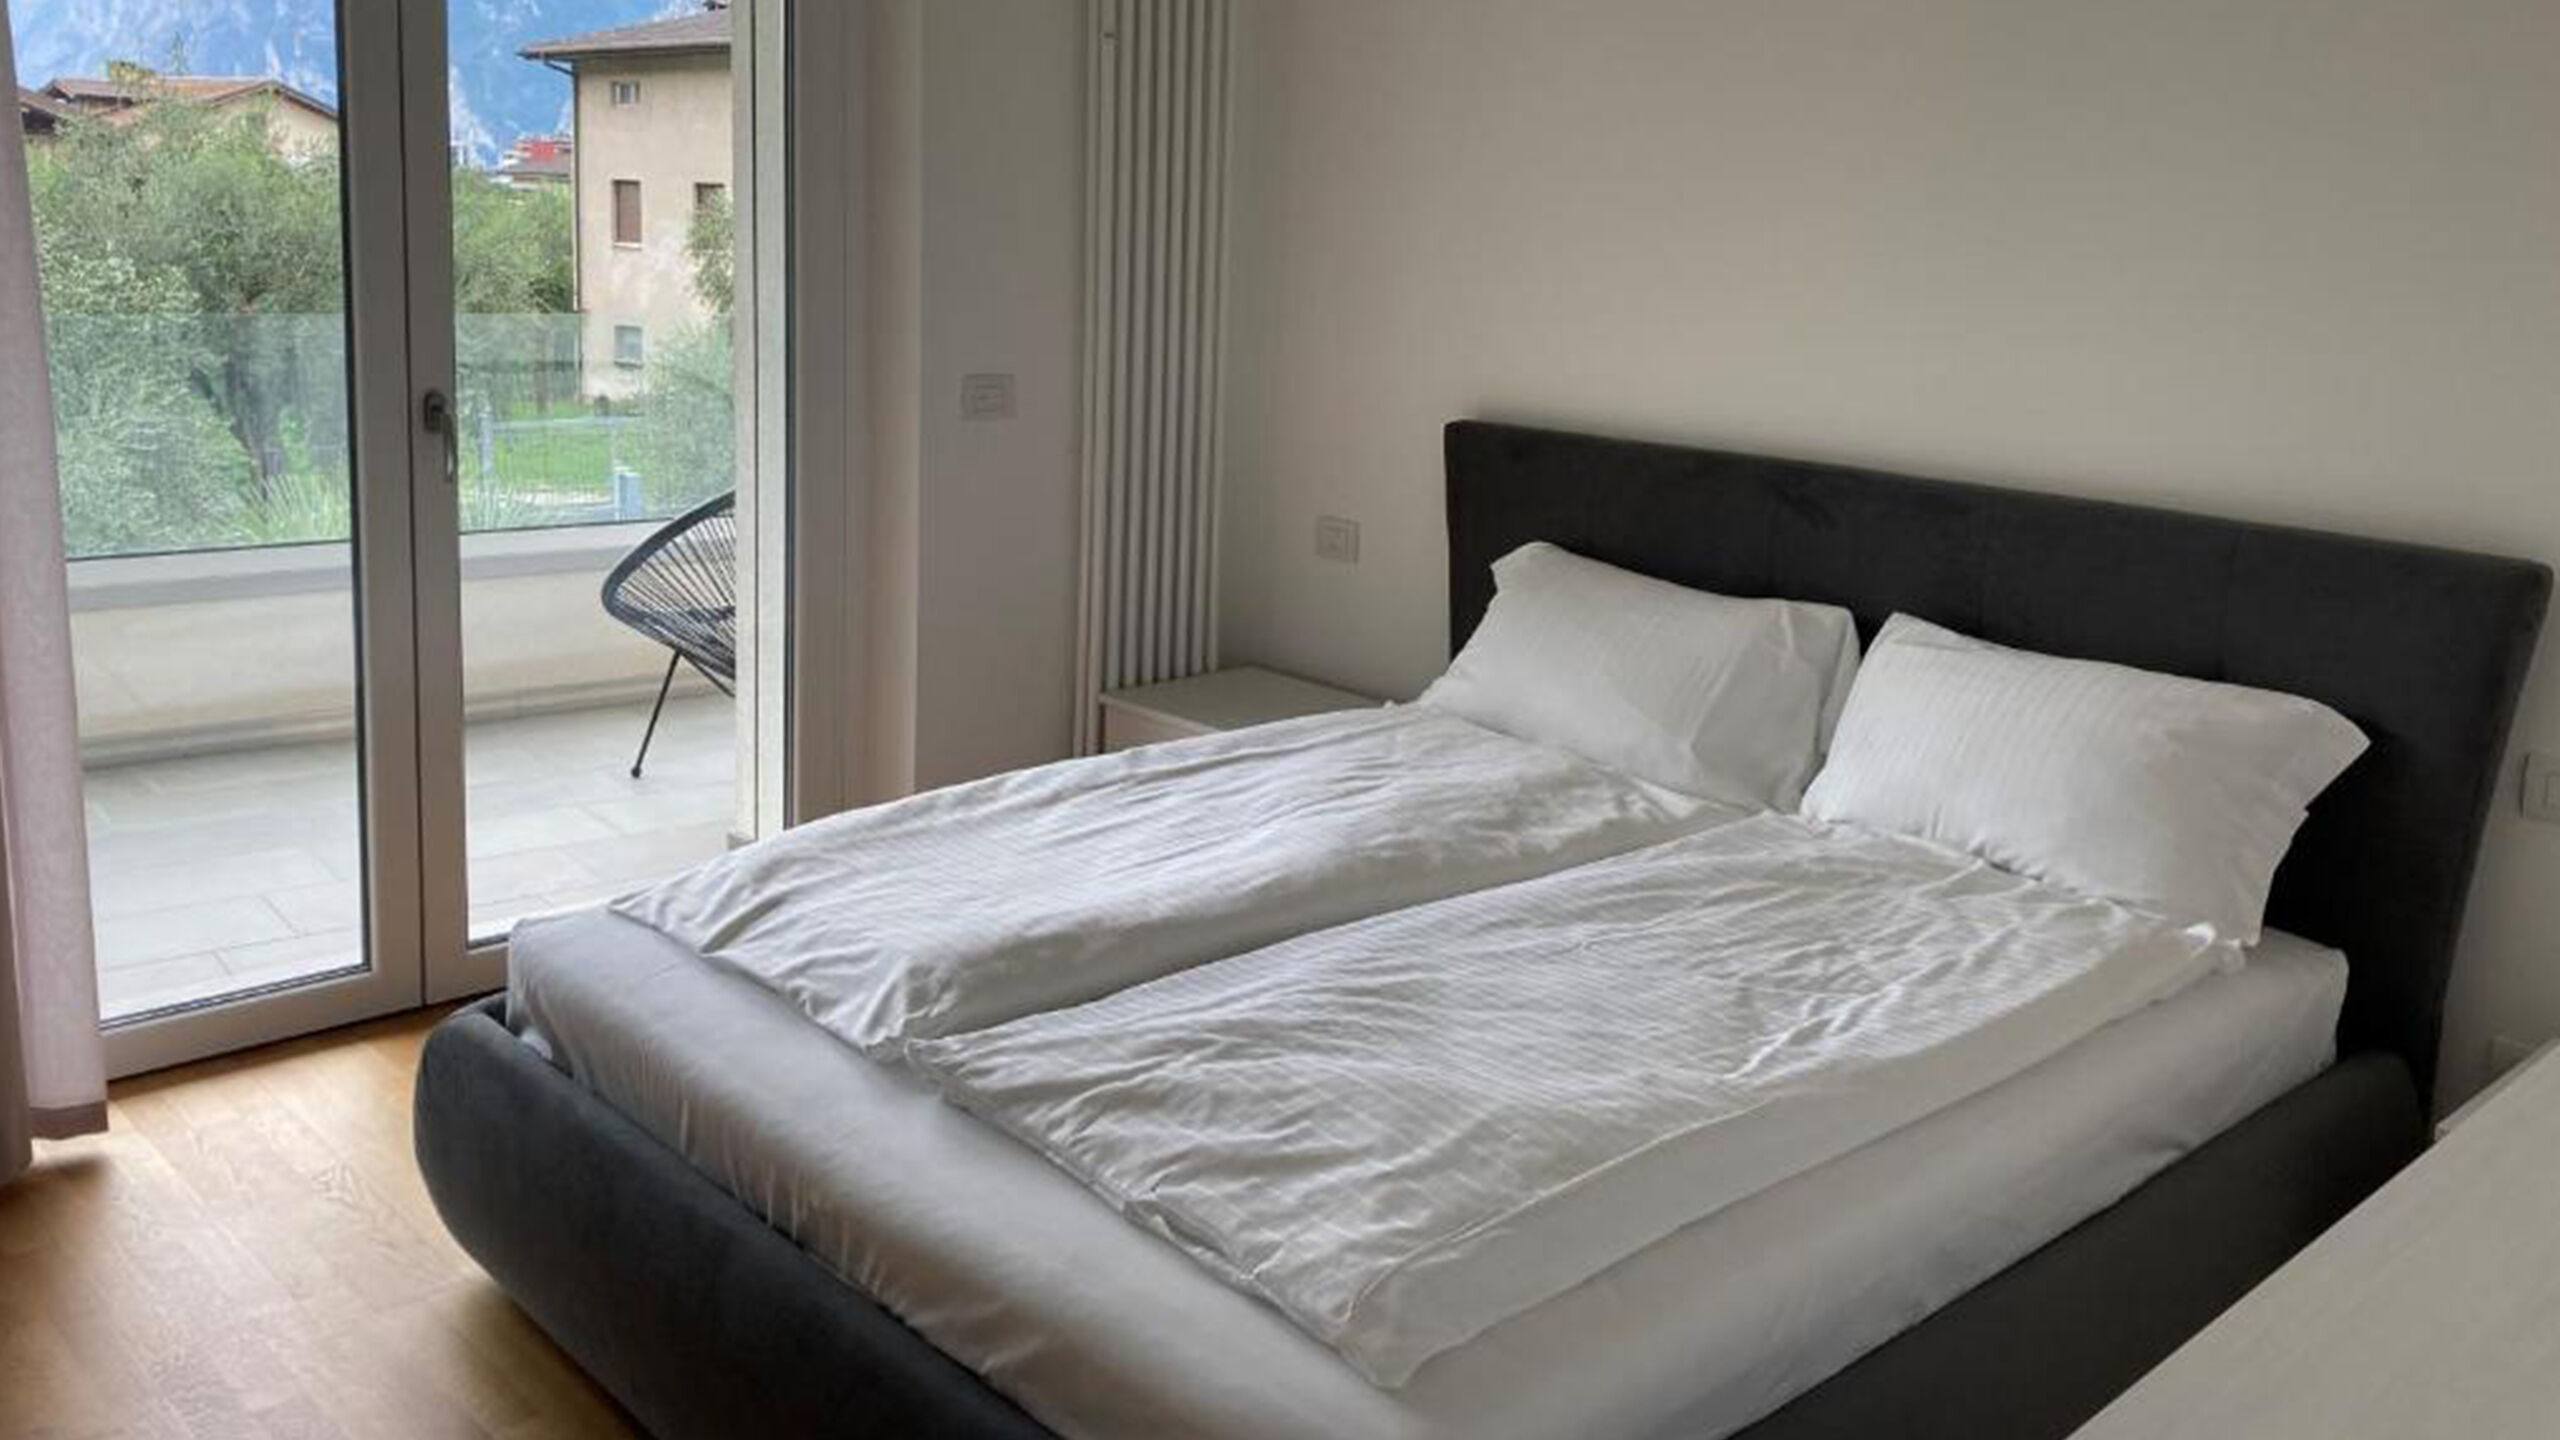 Oleeva Garda Living Suiten, Zimmer und Apartments, nur wenige Minuten vom See und Riva del Garda im Trentino entfernt - Ferienwohnung Terrazzo